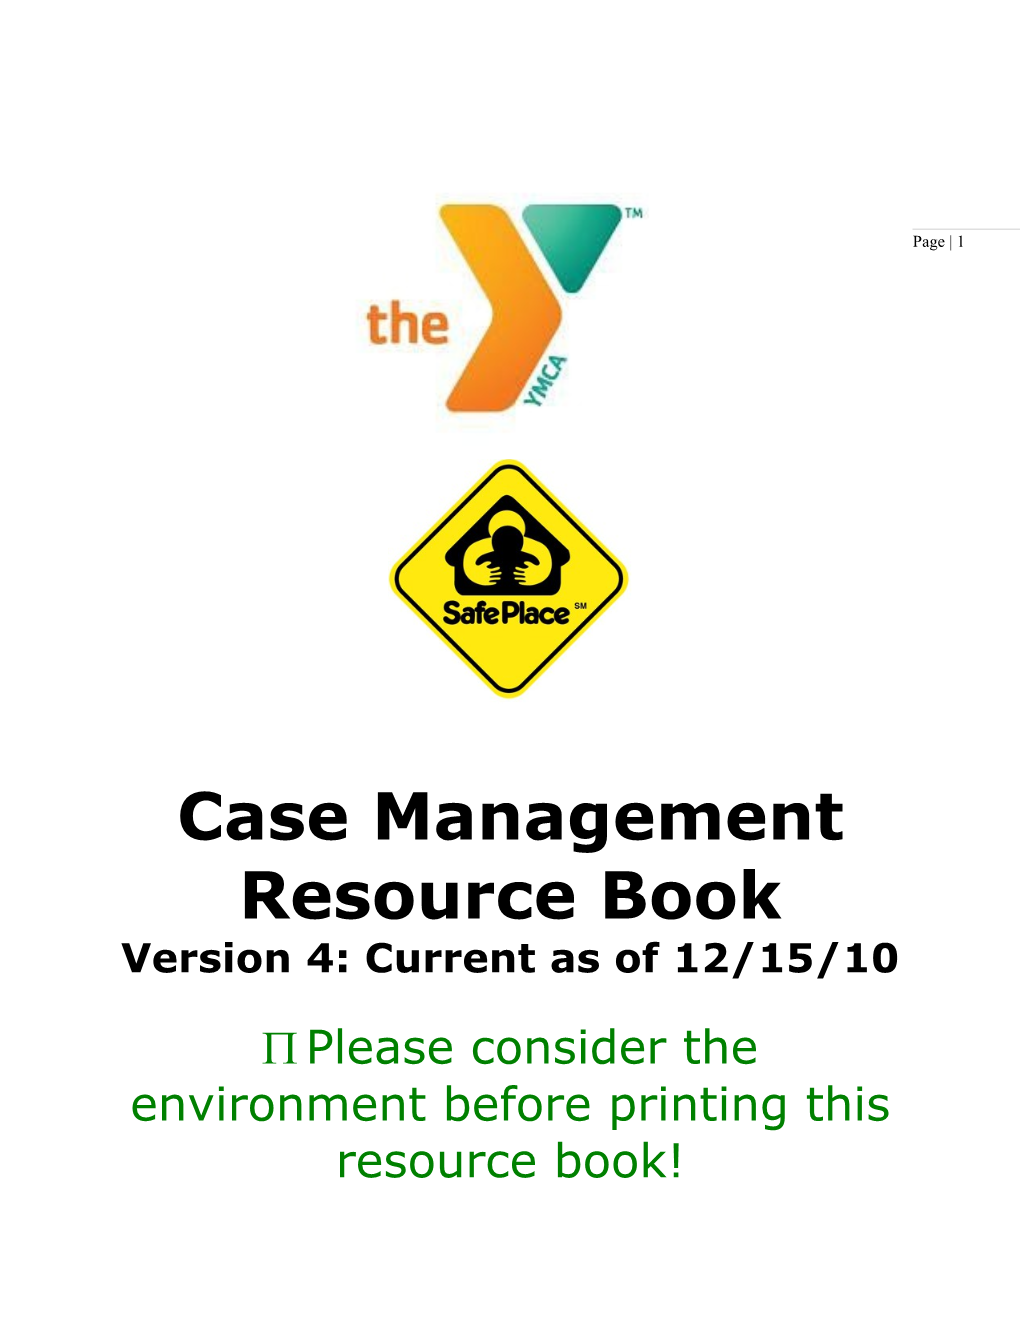 Case Management Resource Book